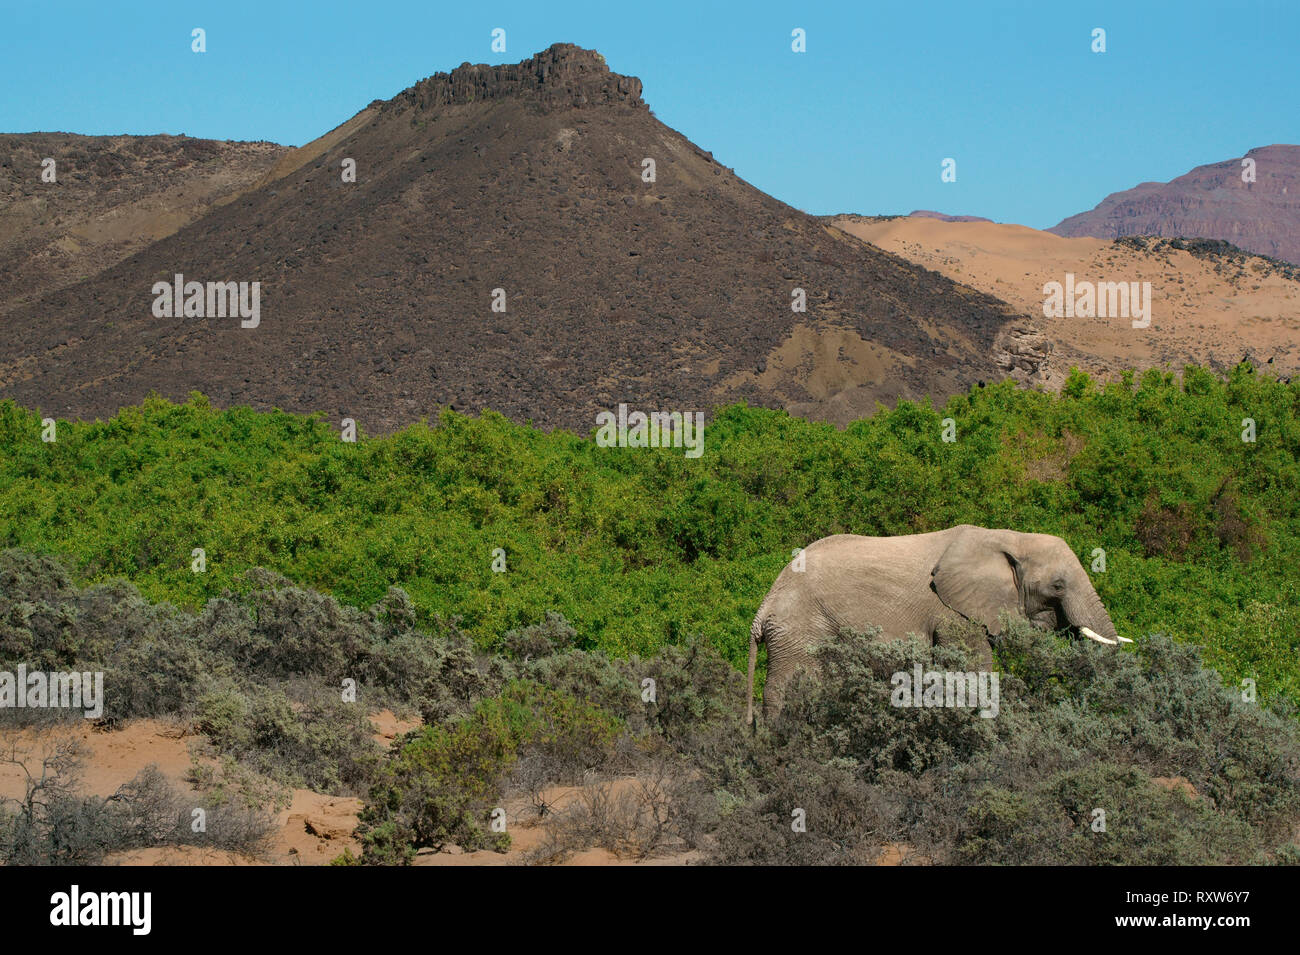 Desert-adapté elephant (Loxodonta africana) est une brousse africaine éléphant avec des adaptations spéciales pour survivre dans les déserts de l'Afrique. Ils ont des jambes plus petites,taille et un plus grand encombrement que les autres éléphants de Bush. Près de Mowani Lodge dans le désert du Namib de nord-ouest de la Namibie,Afrique Banque D'Images